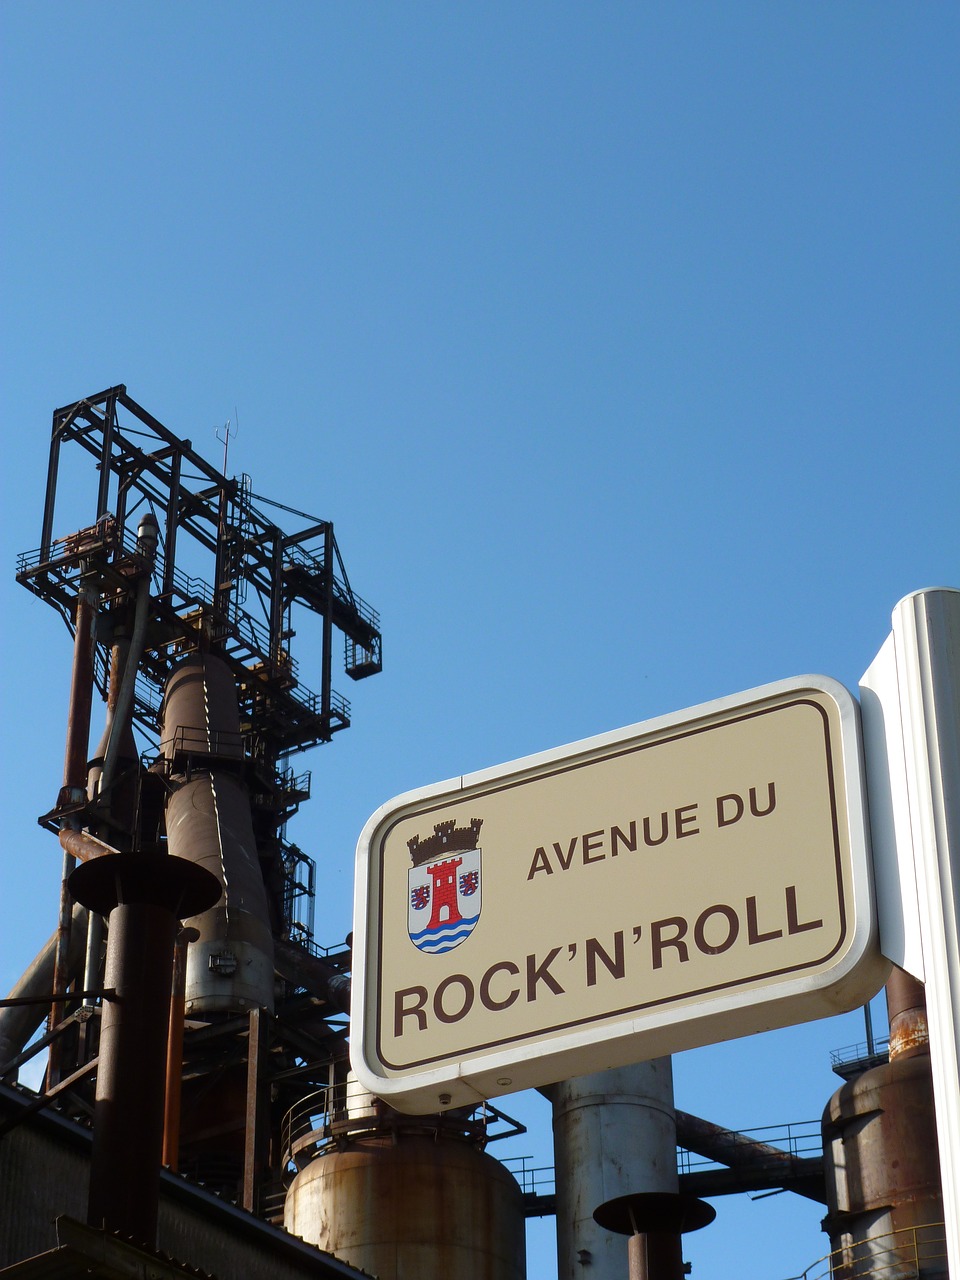 luxembourg avenue du rock 'n' roll rock ' n' roll free photo